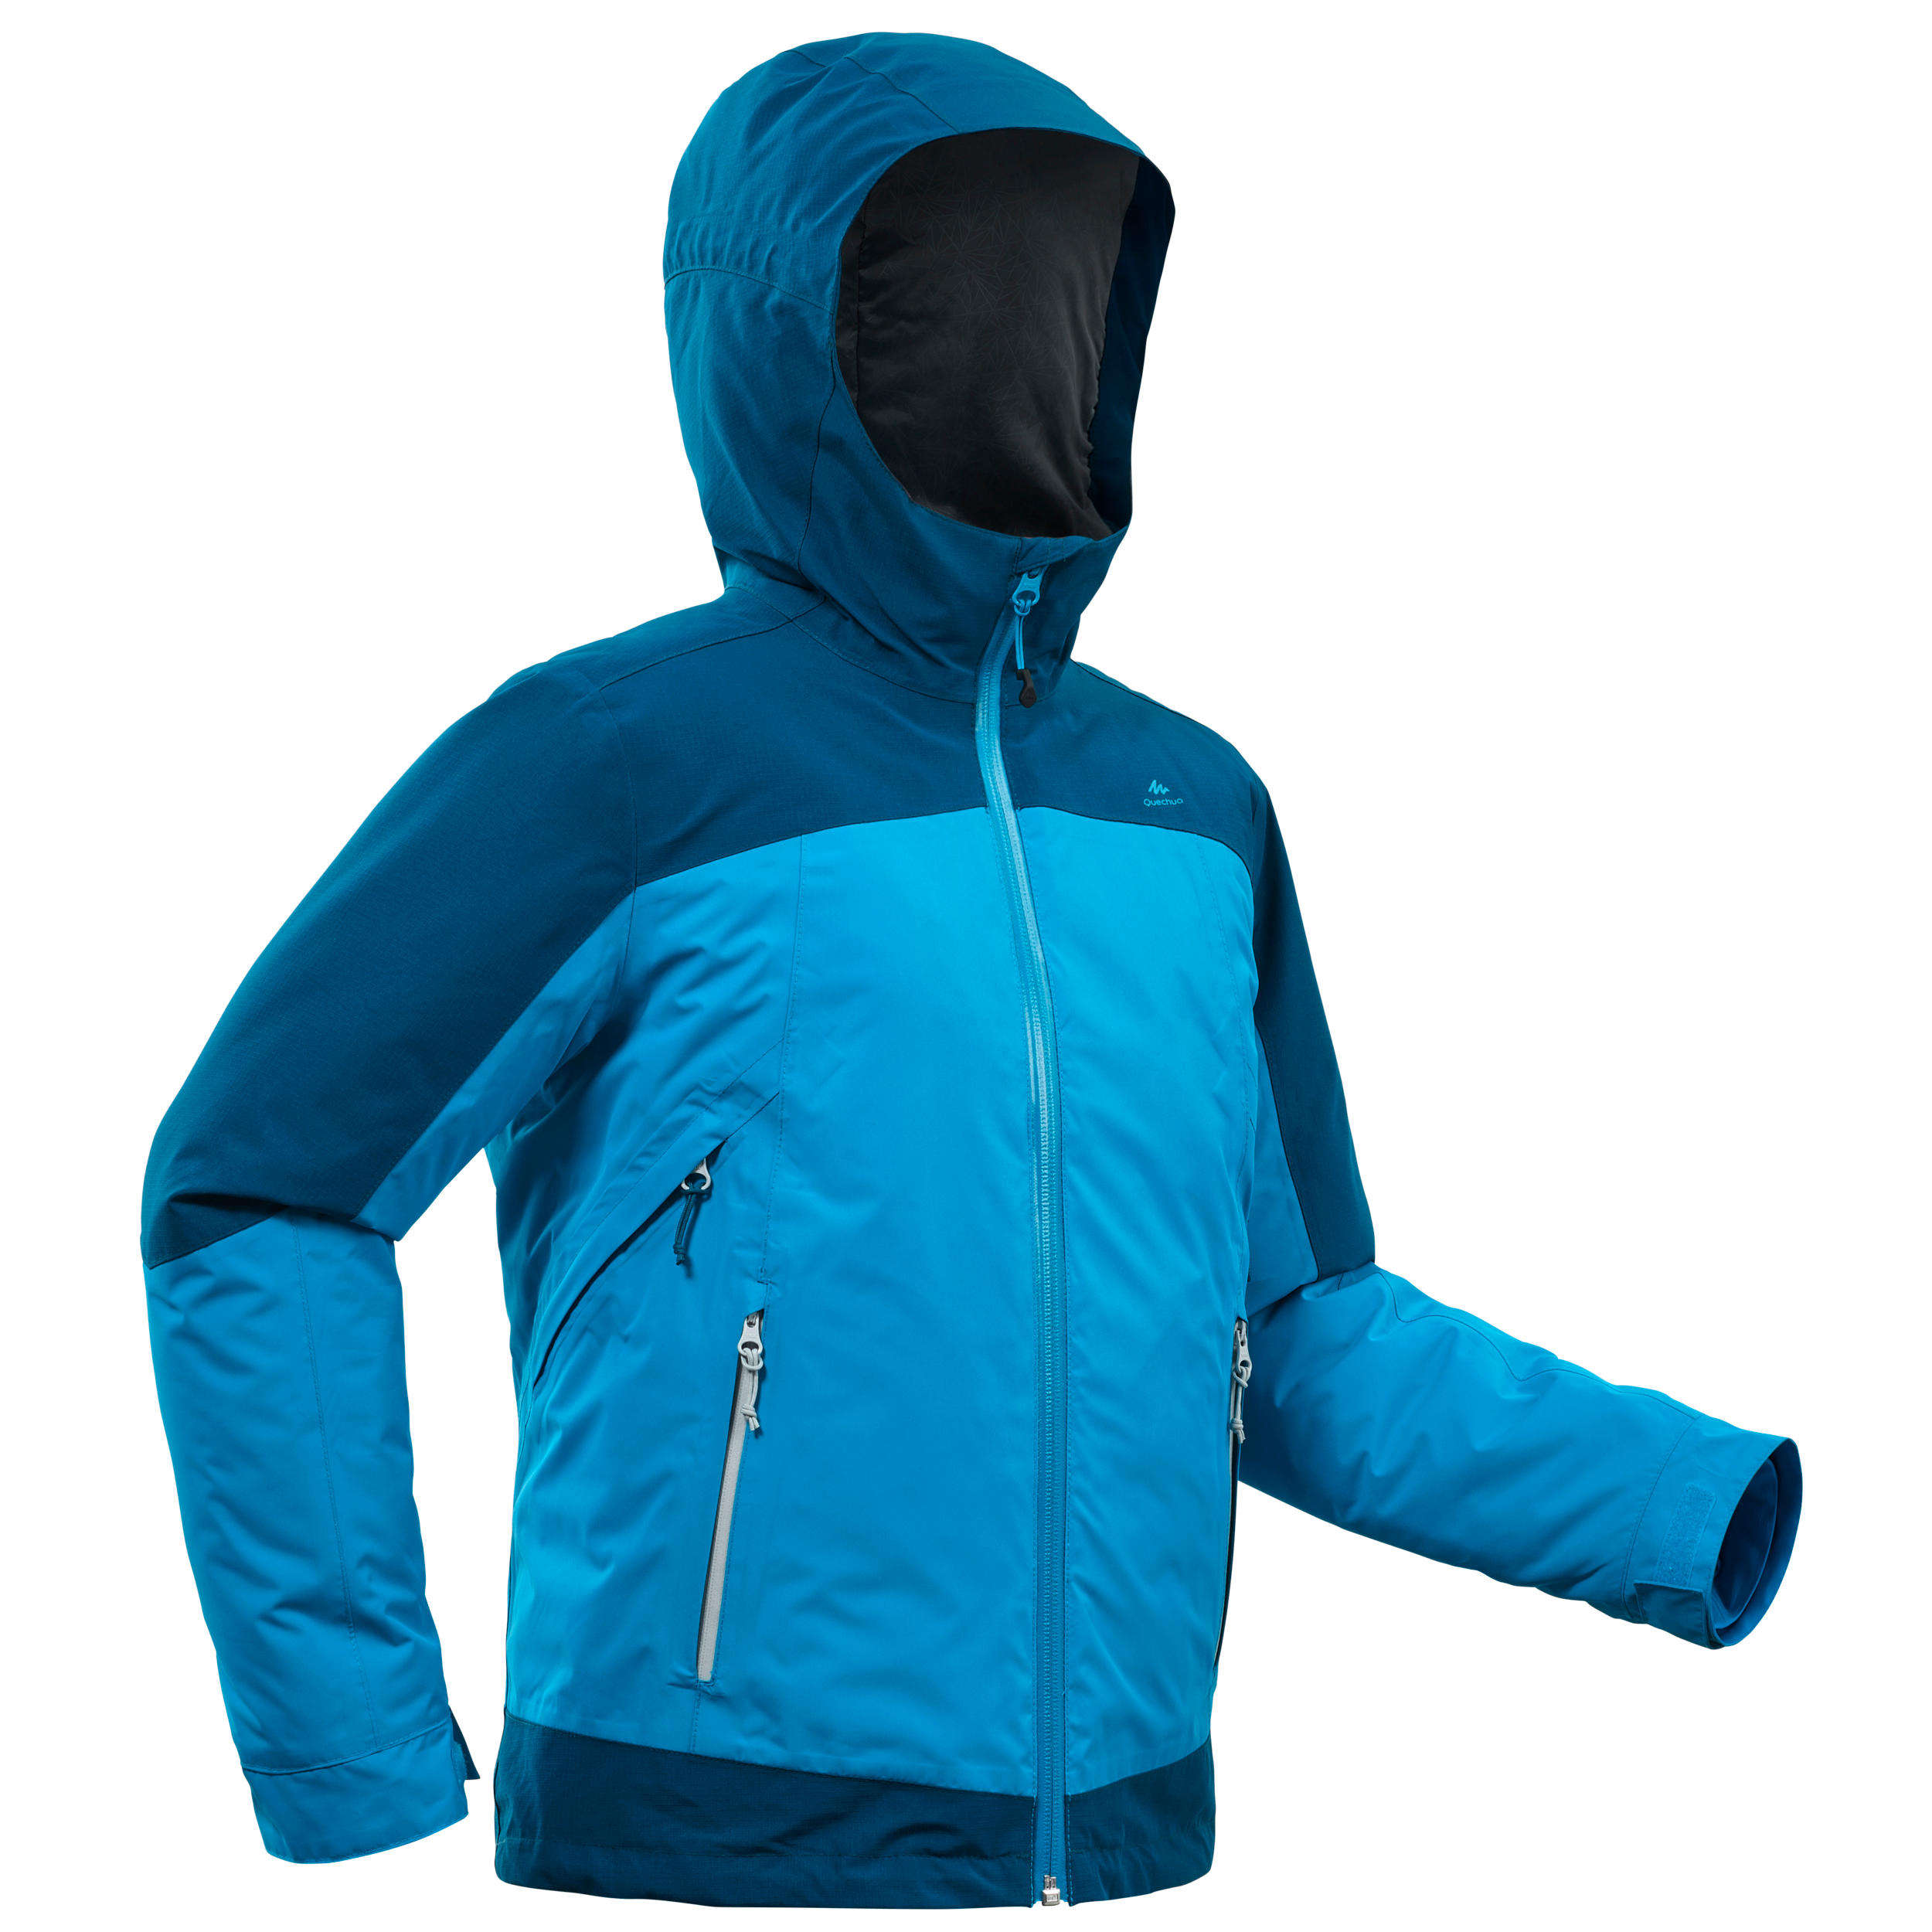 decathlon sh500 jacket